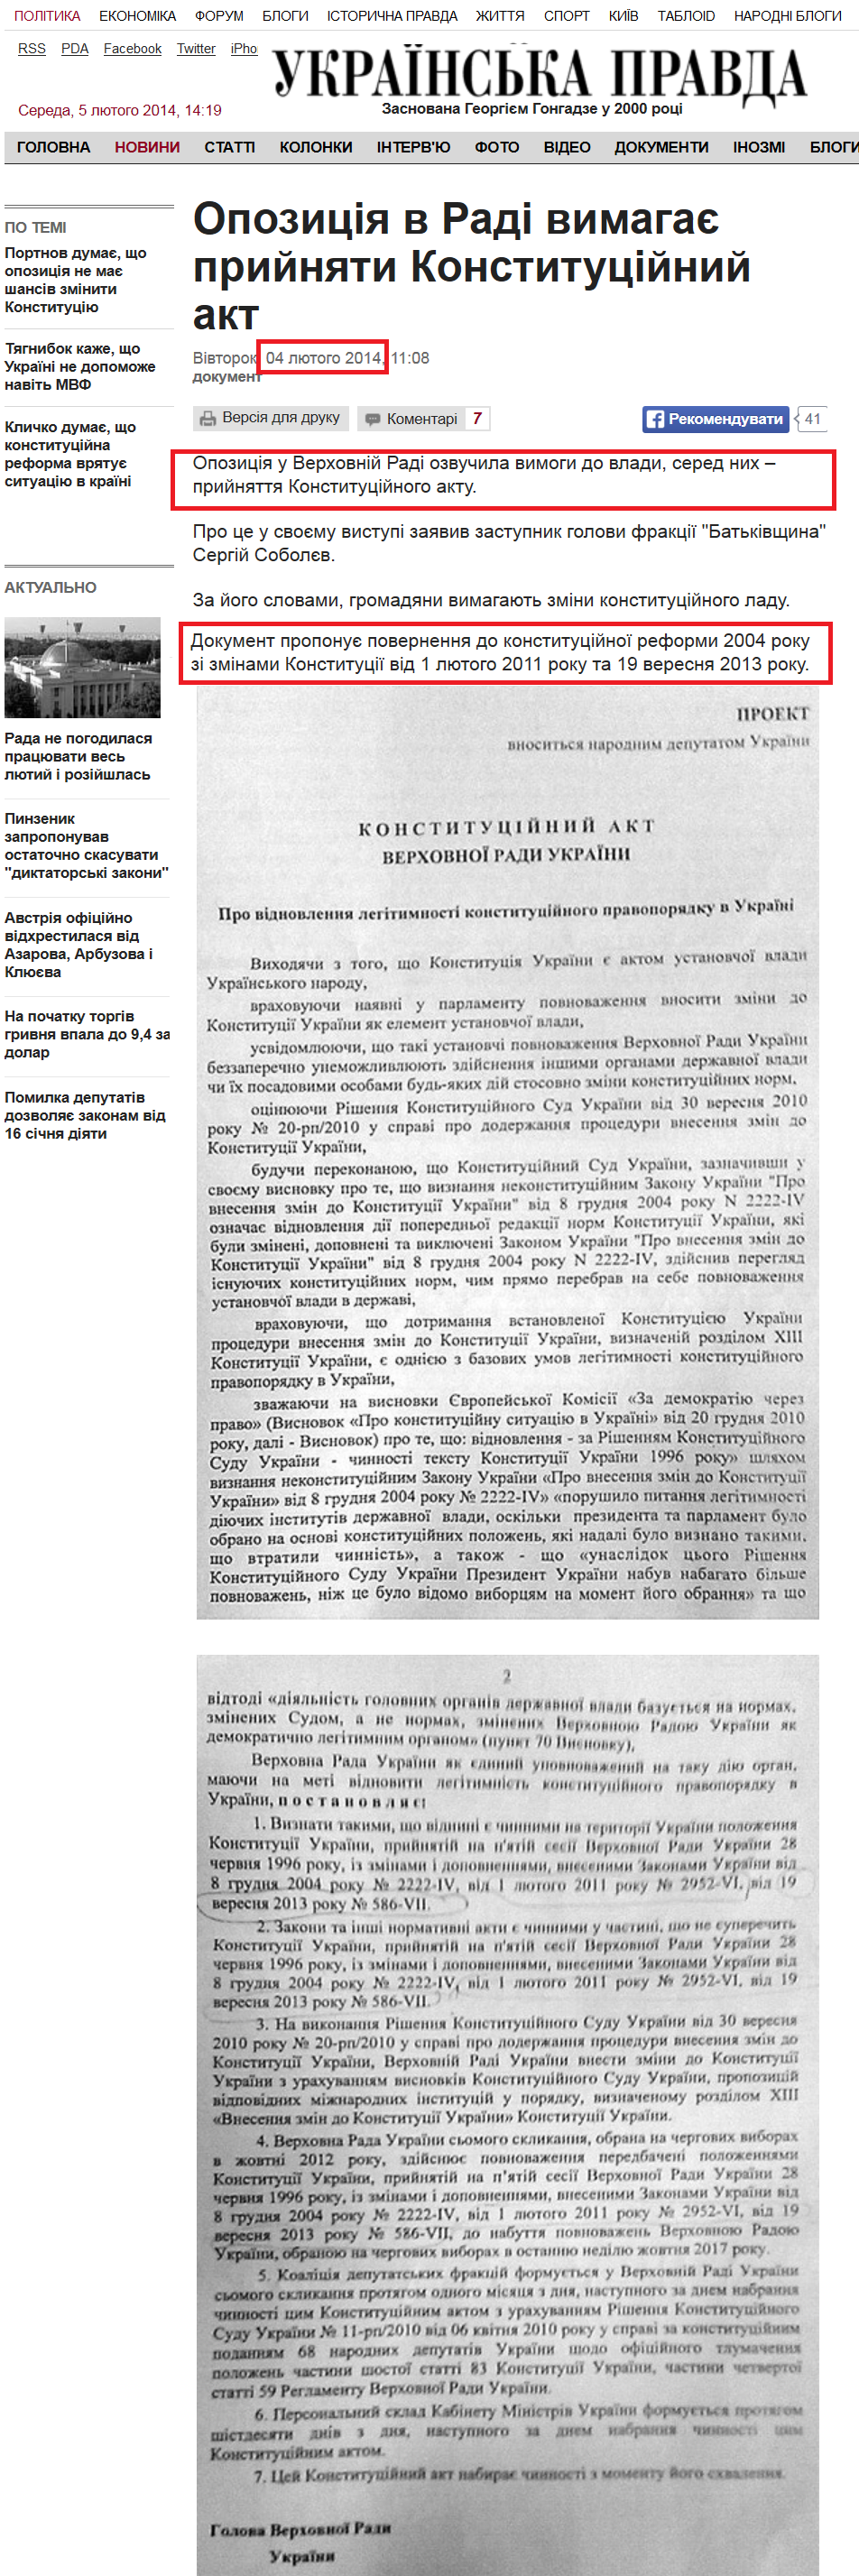 http://www.pravda.com.ua/news/2014/02/4/7012586/